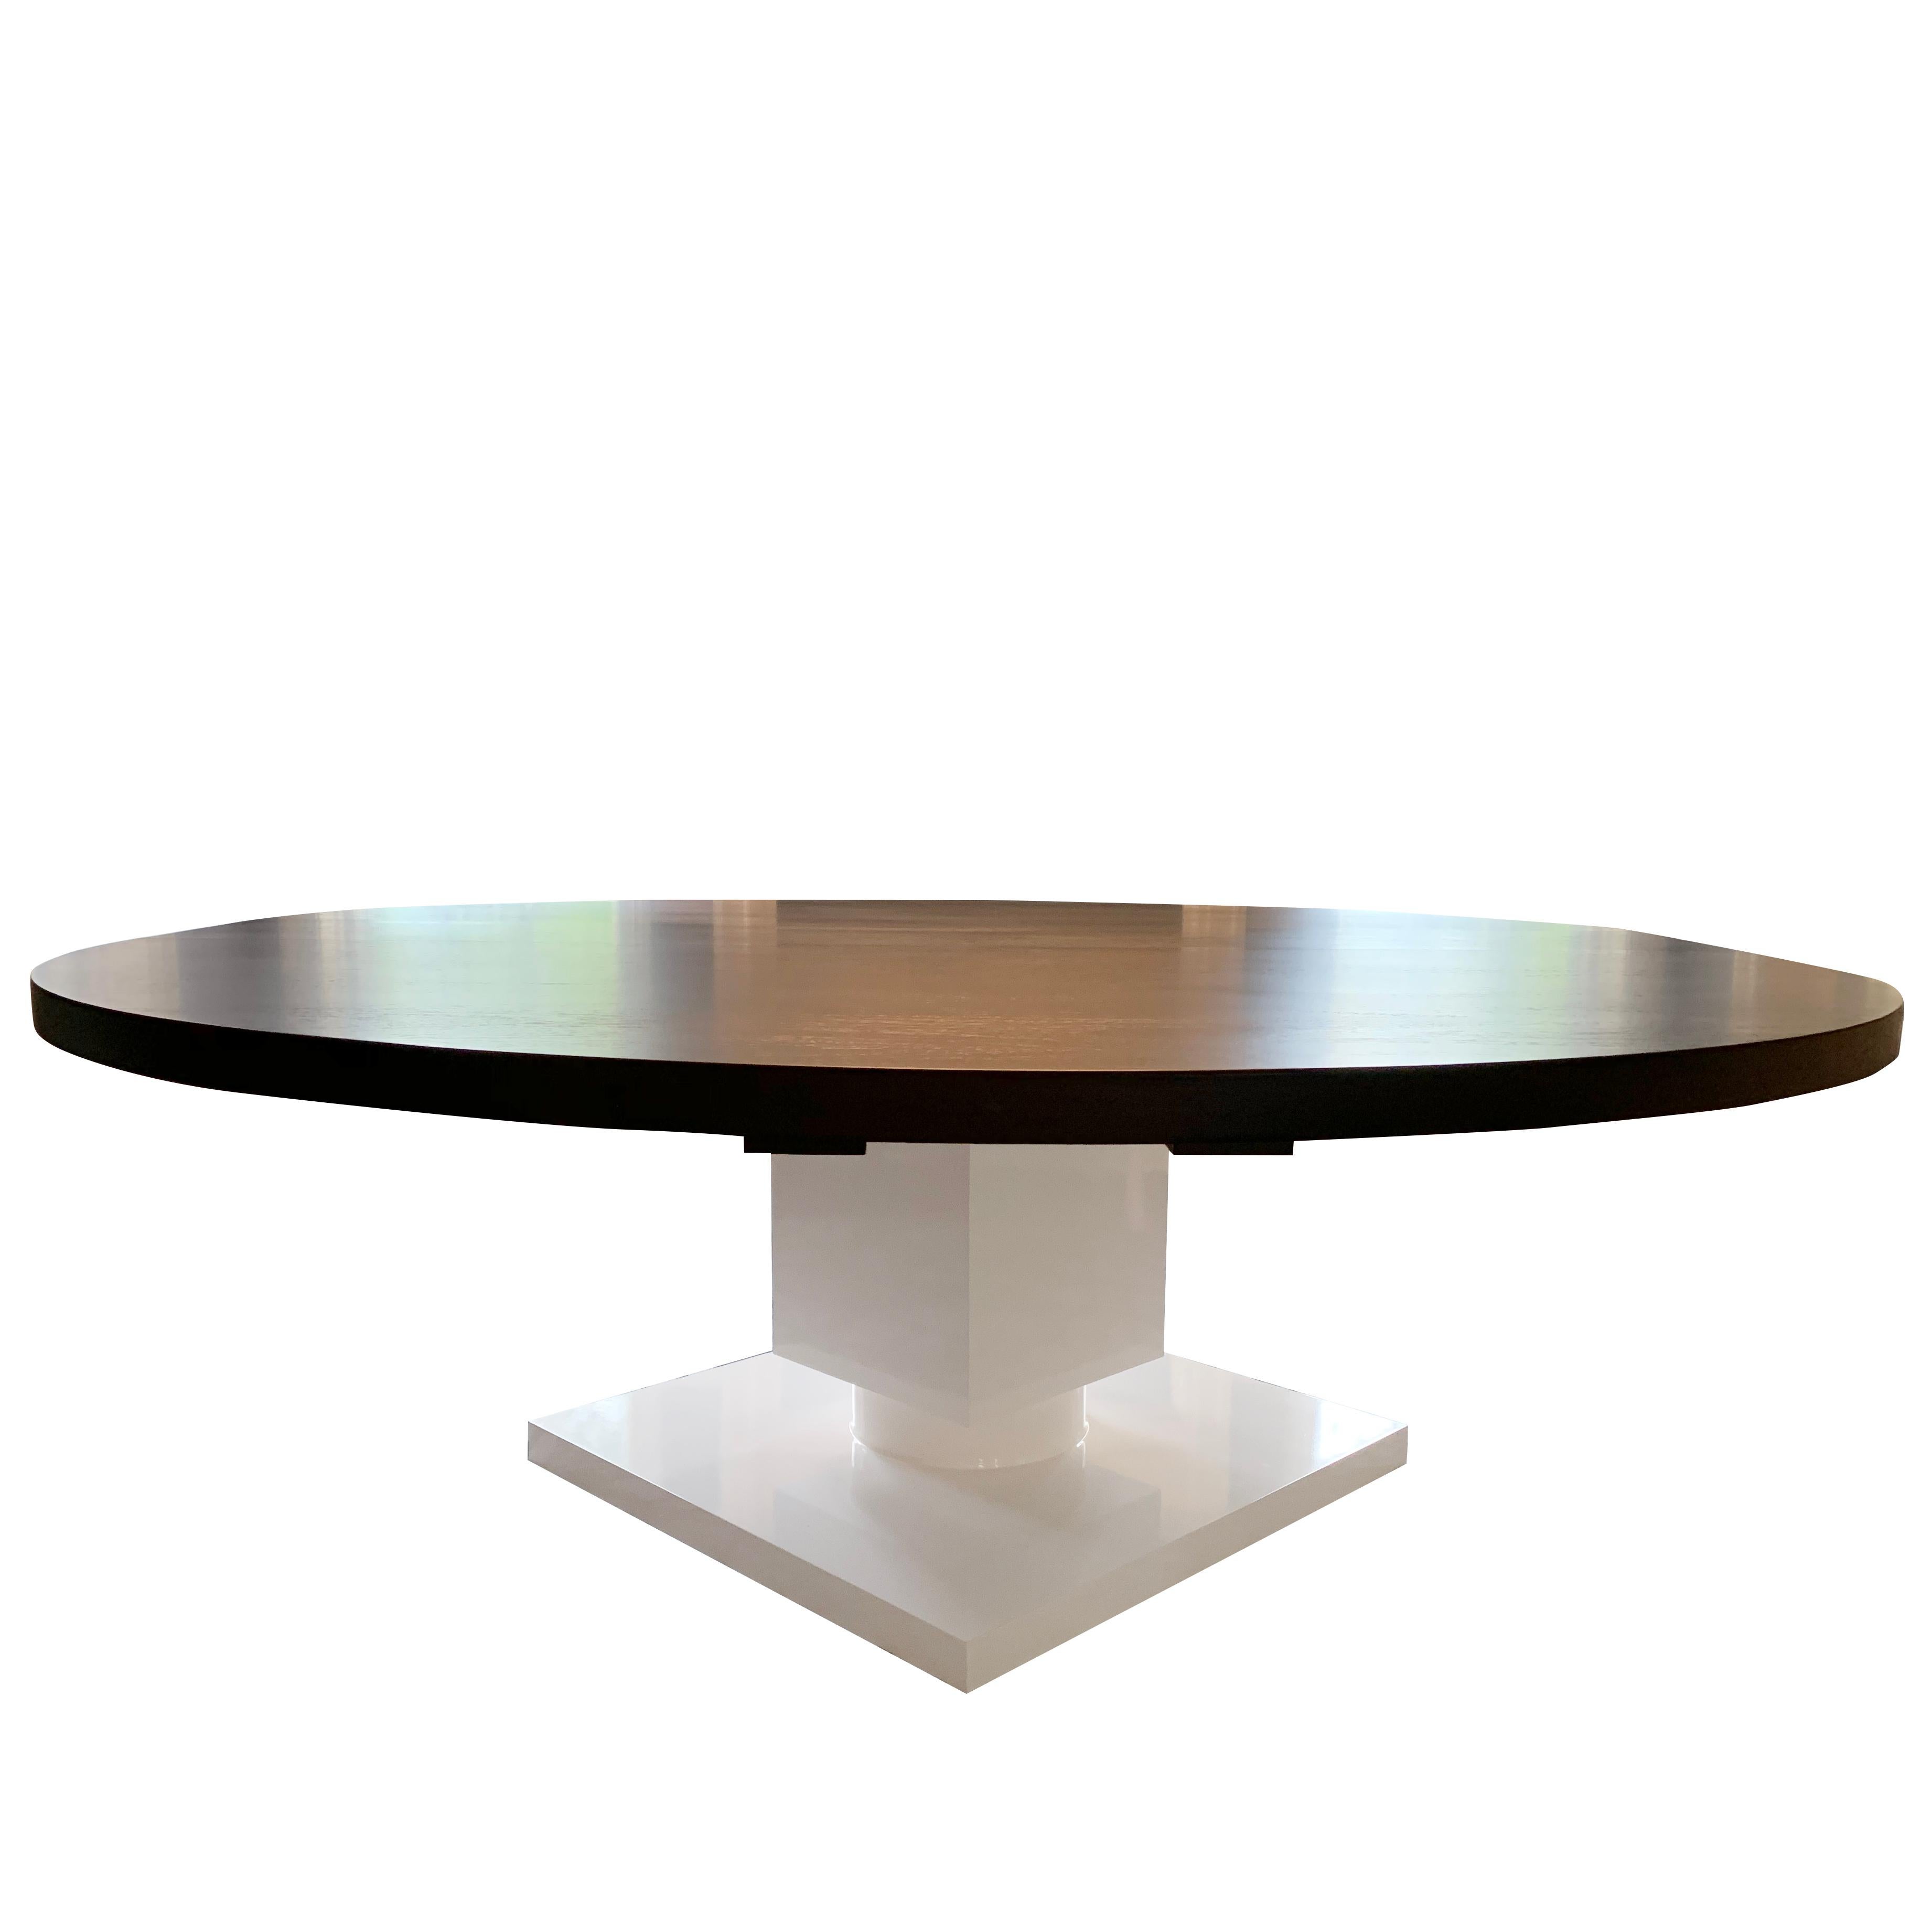 La table à manger ronde Gabietta est notre version moderne de la table à manger traditionnelle à piédestal. Base cubique laquée en blanc brillant et plateau rond en bois de wengé. La table peut être construite avec ou sans rallonge.

Fabrication